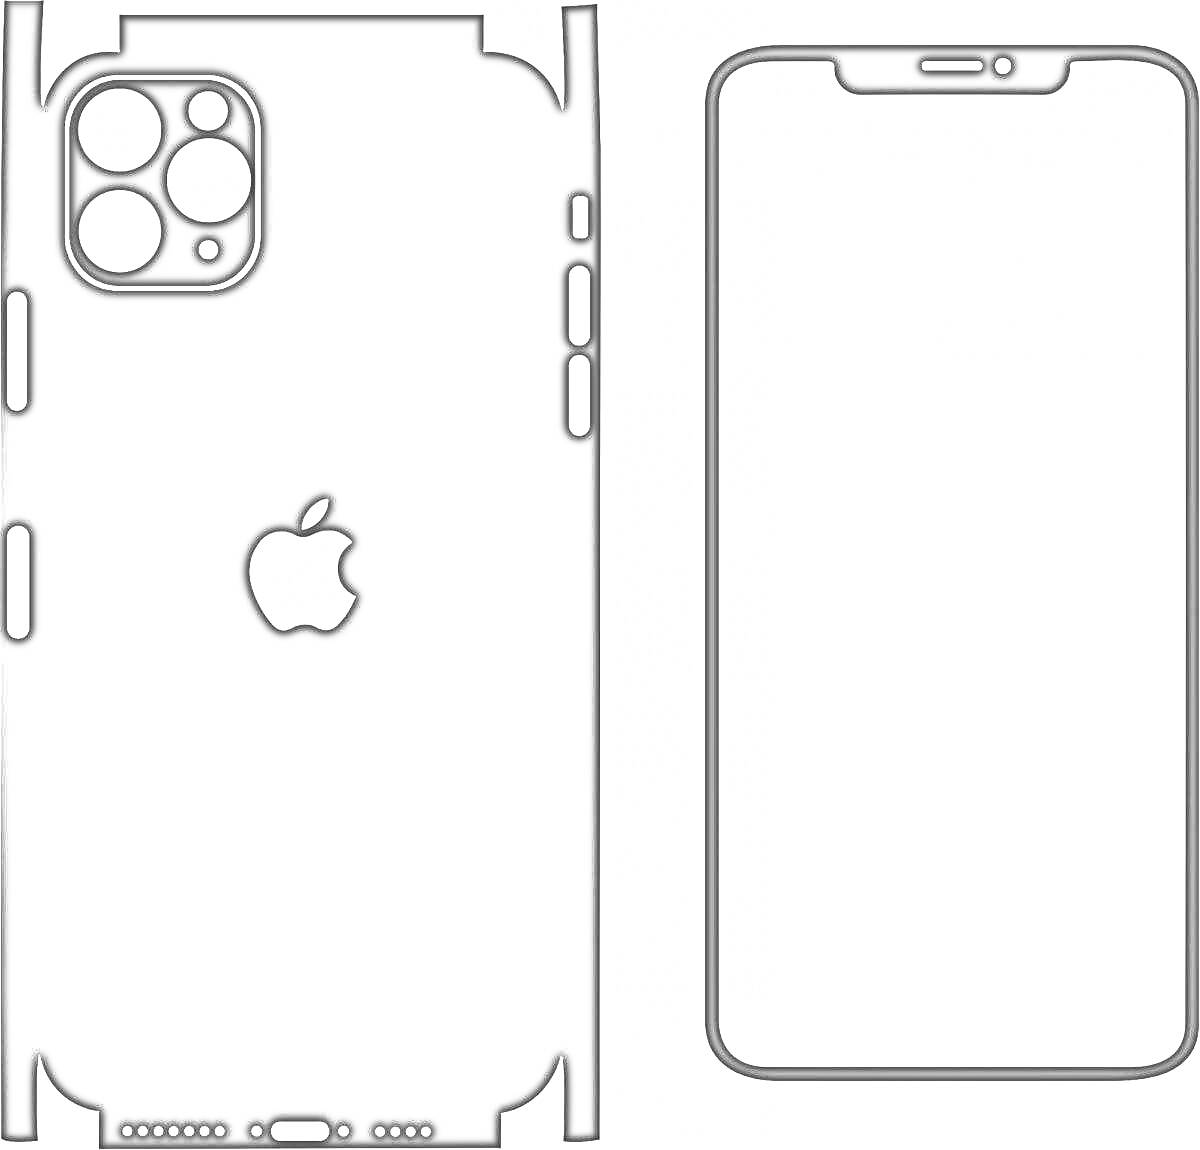 Раскраска для iPhone 14 Pro Max, задняя и передняя панели с вырезами для камеры, кнопок и логотипом Apple